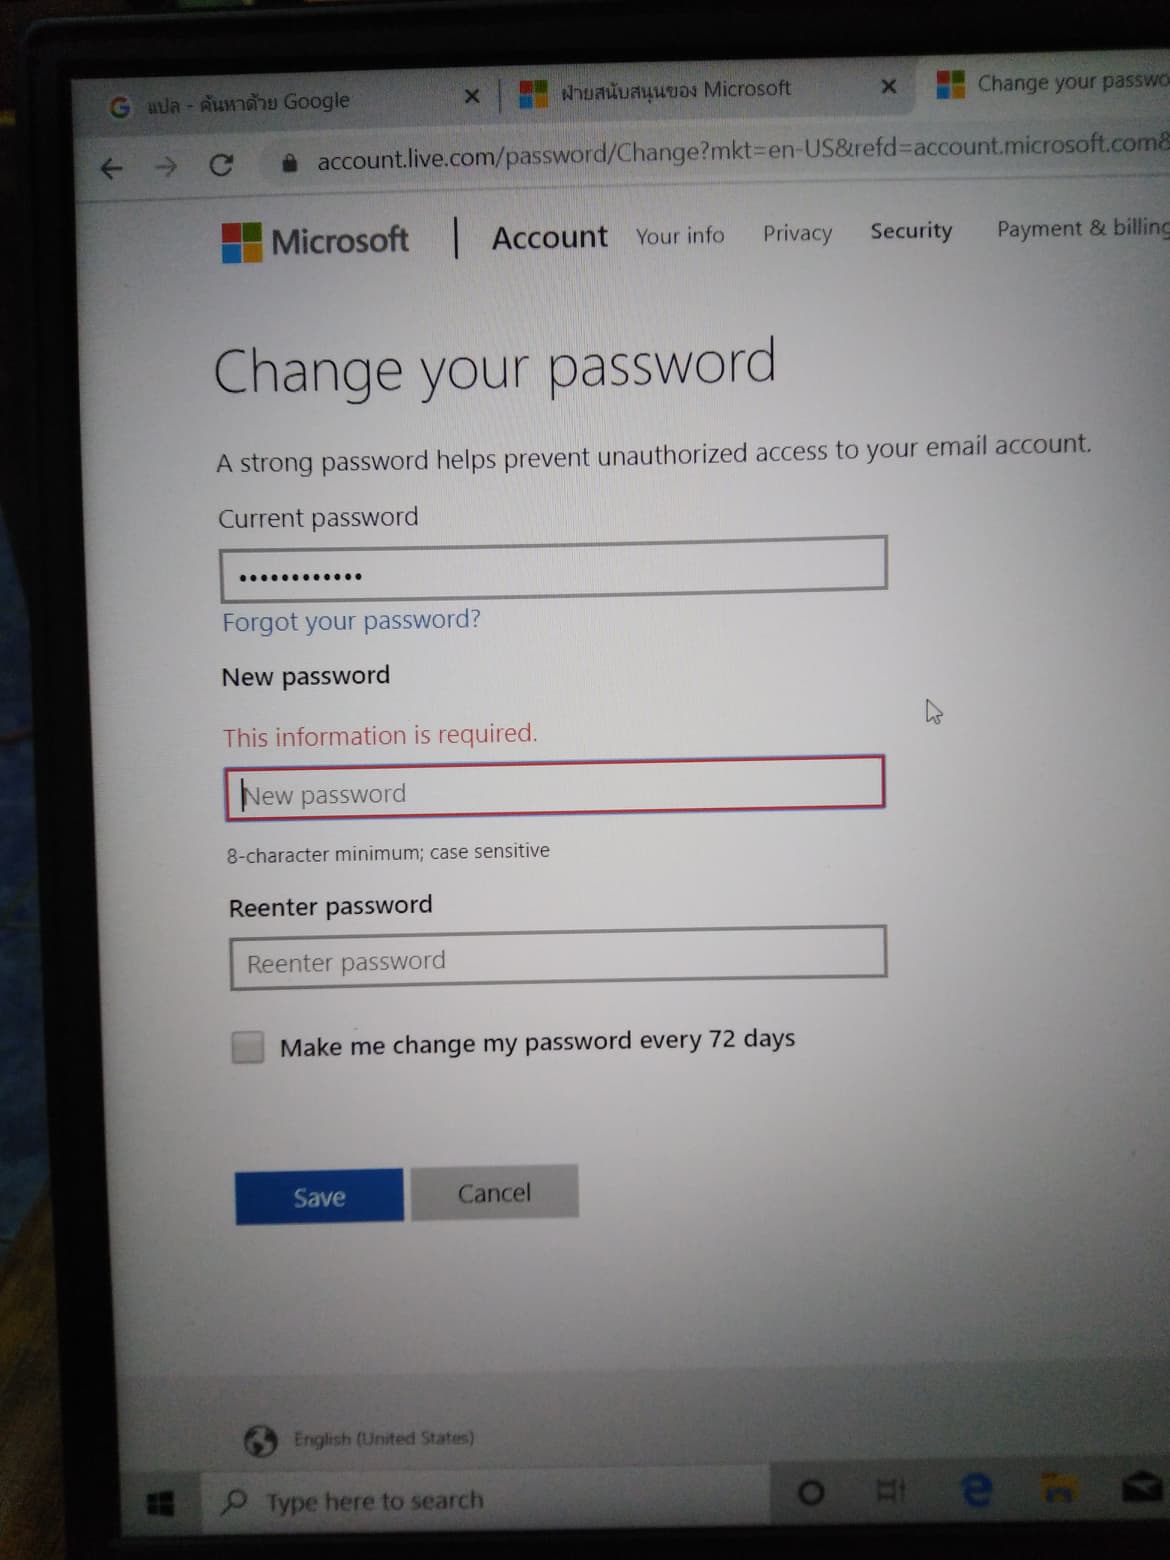 ยกเลิก Password Windows 10 ไม่ได้ - Microsoft Community